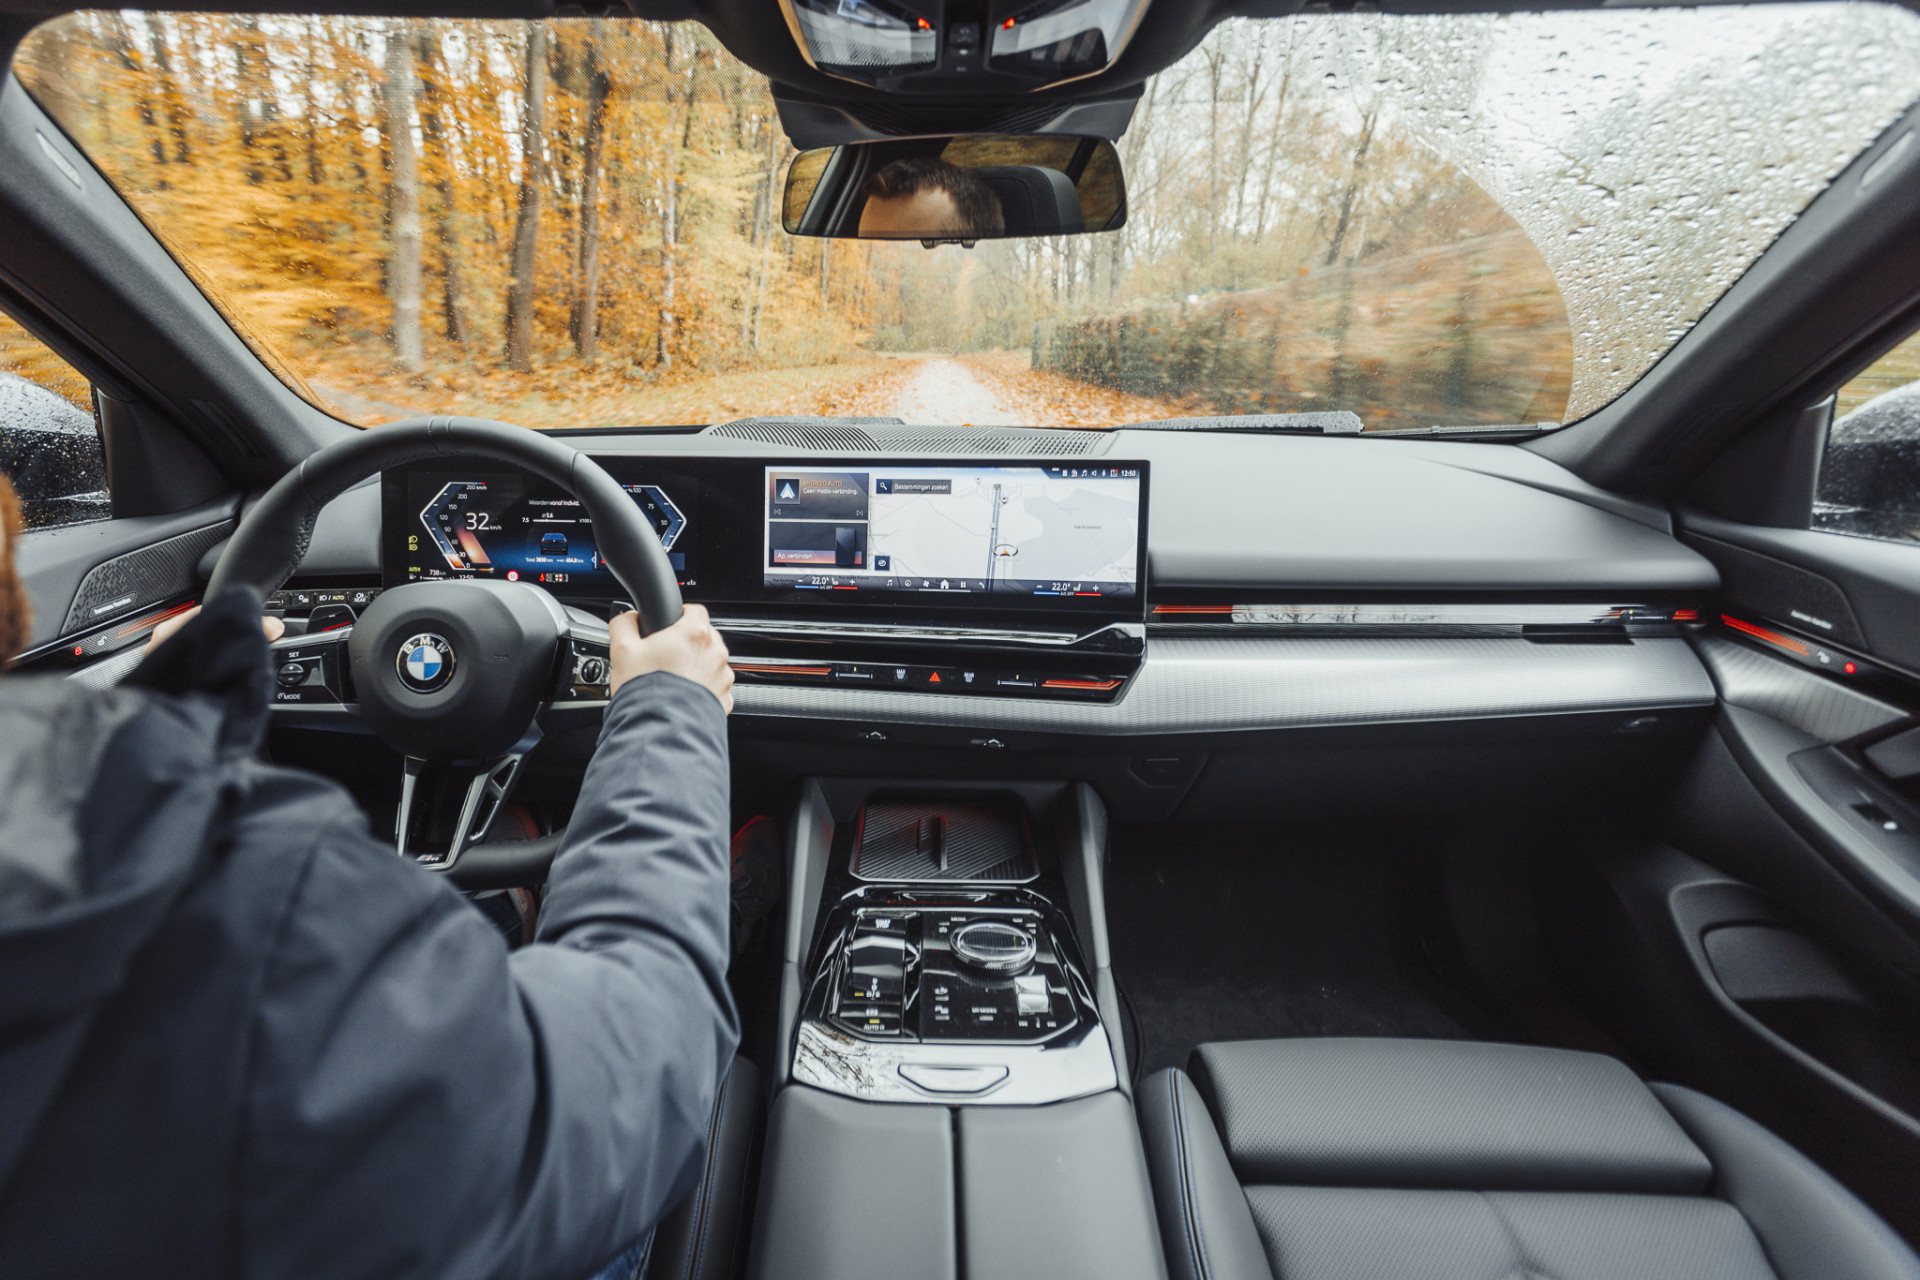 BMW transforme les tableaux de bord en console de jeu